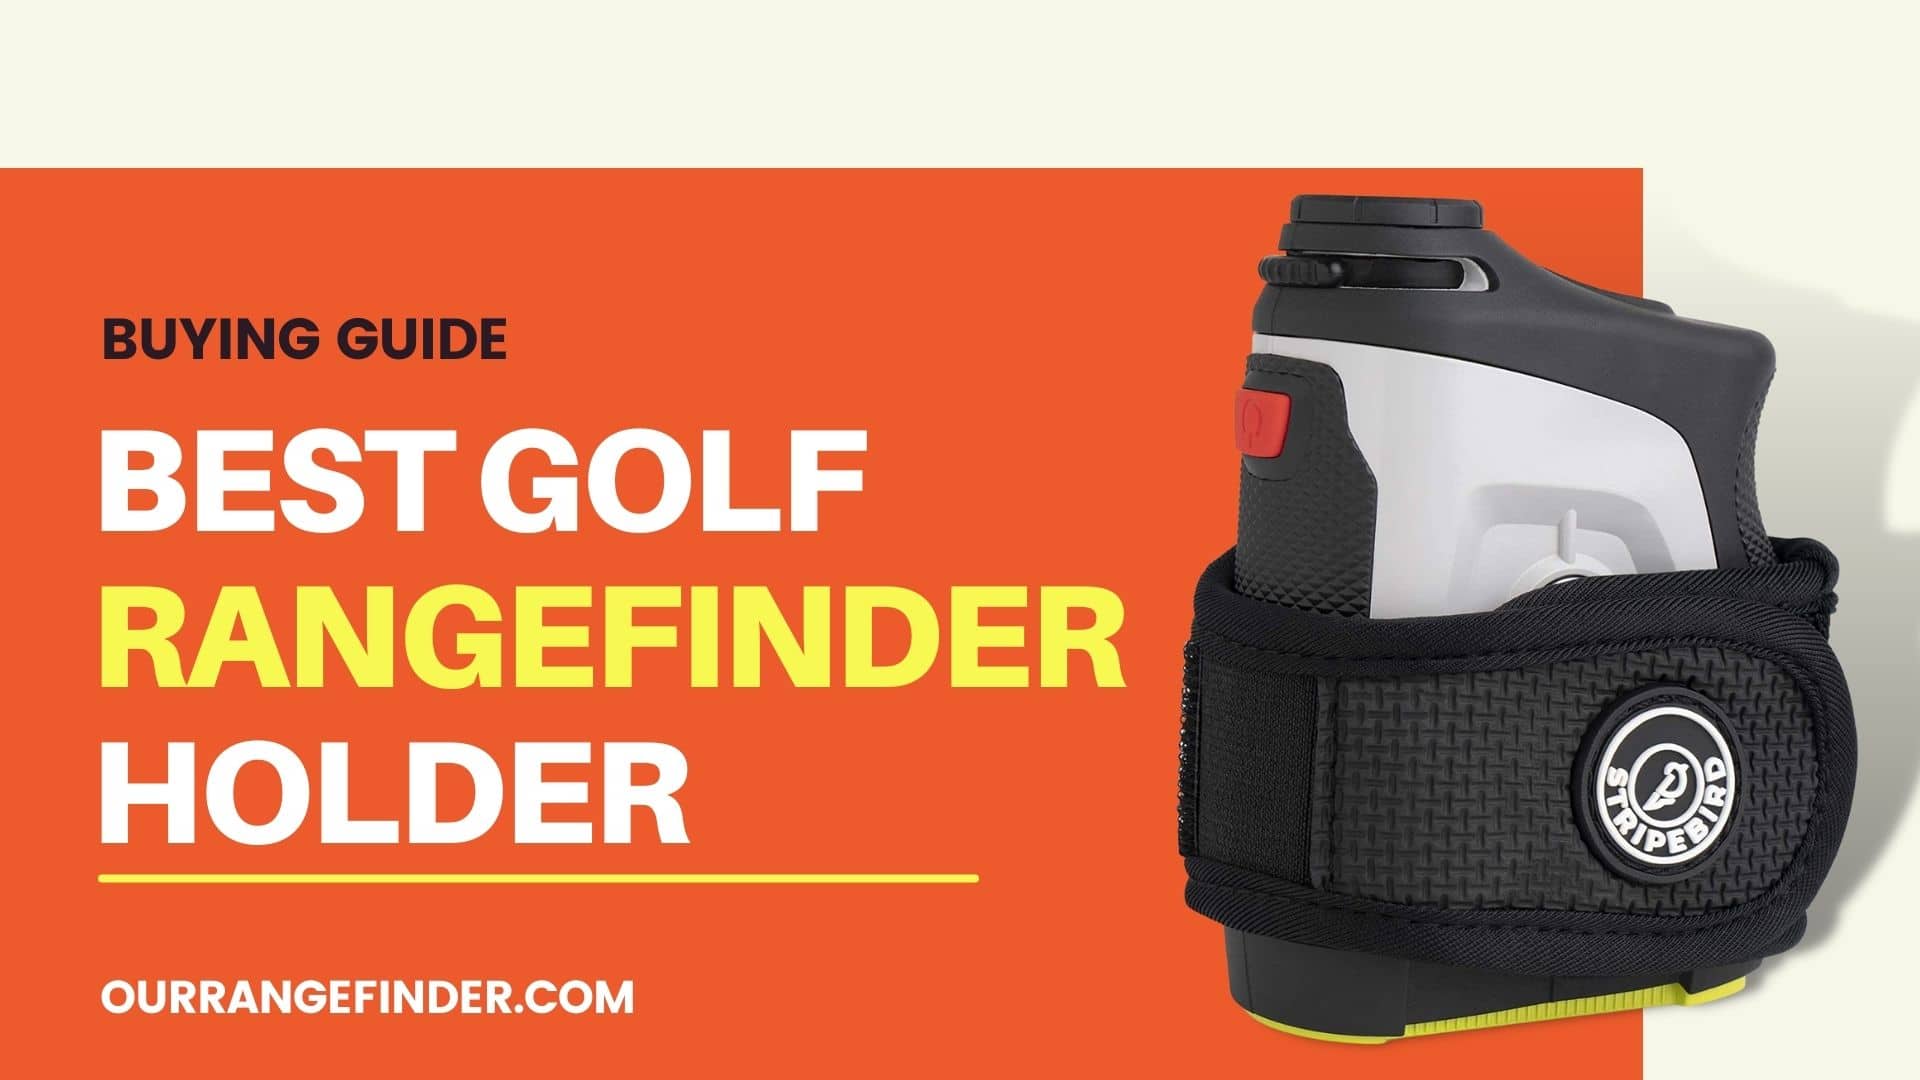 Best Golf Rangefinder Holder